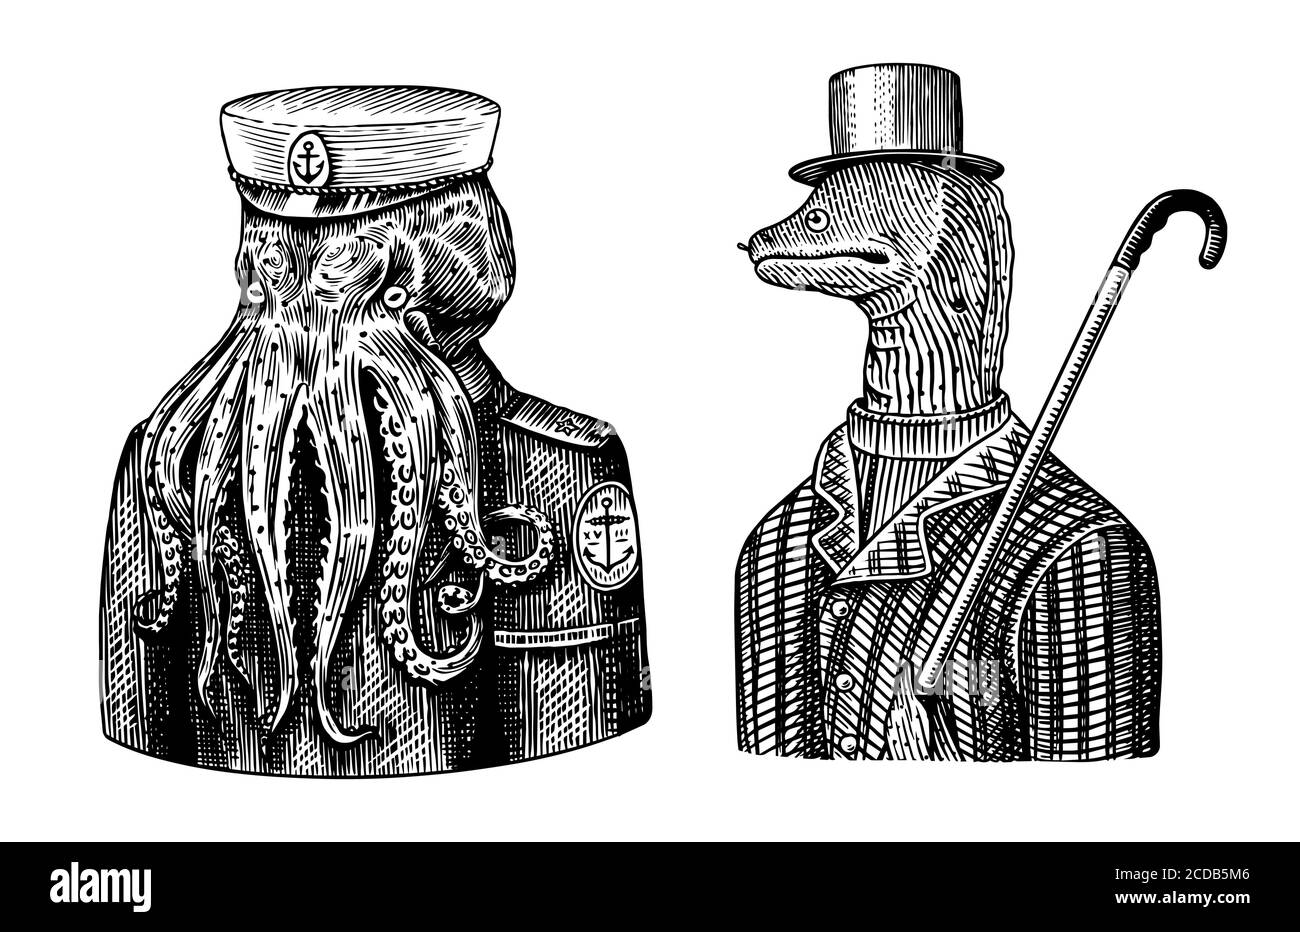 Octopus Seemann. Seekapitän und Muraena Aale. Mode Tier Charakter. Nautischer Seaman oder Seefahrer. Handgezeichnete Skizze. Vektor graviert Stock Vektor